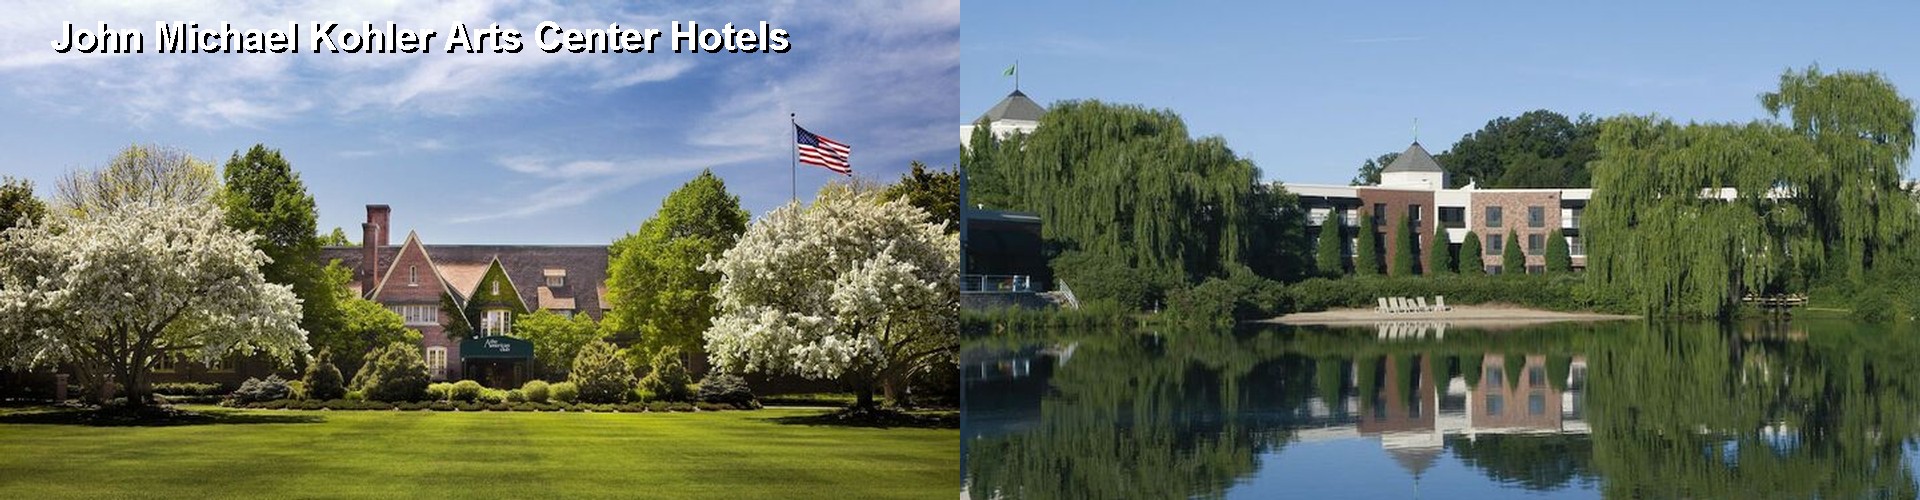 5 Best Hotels near John Michael Kohler Arts Center